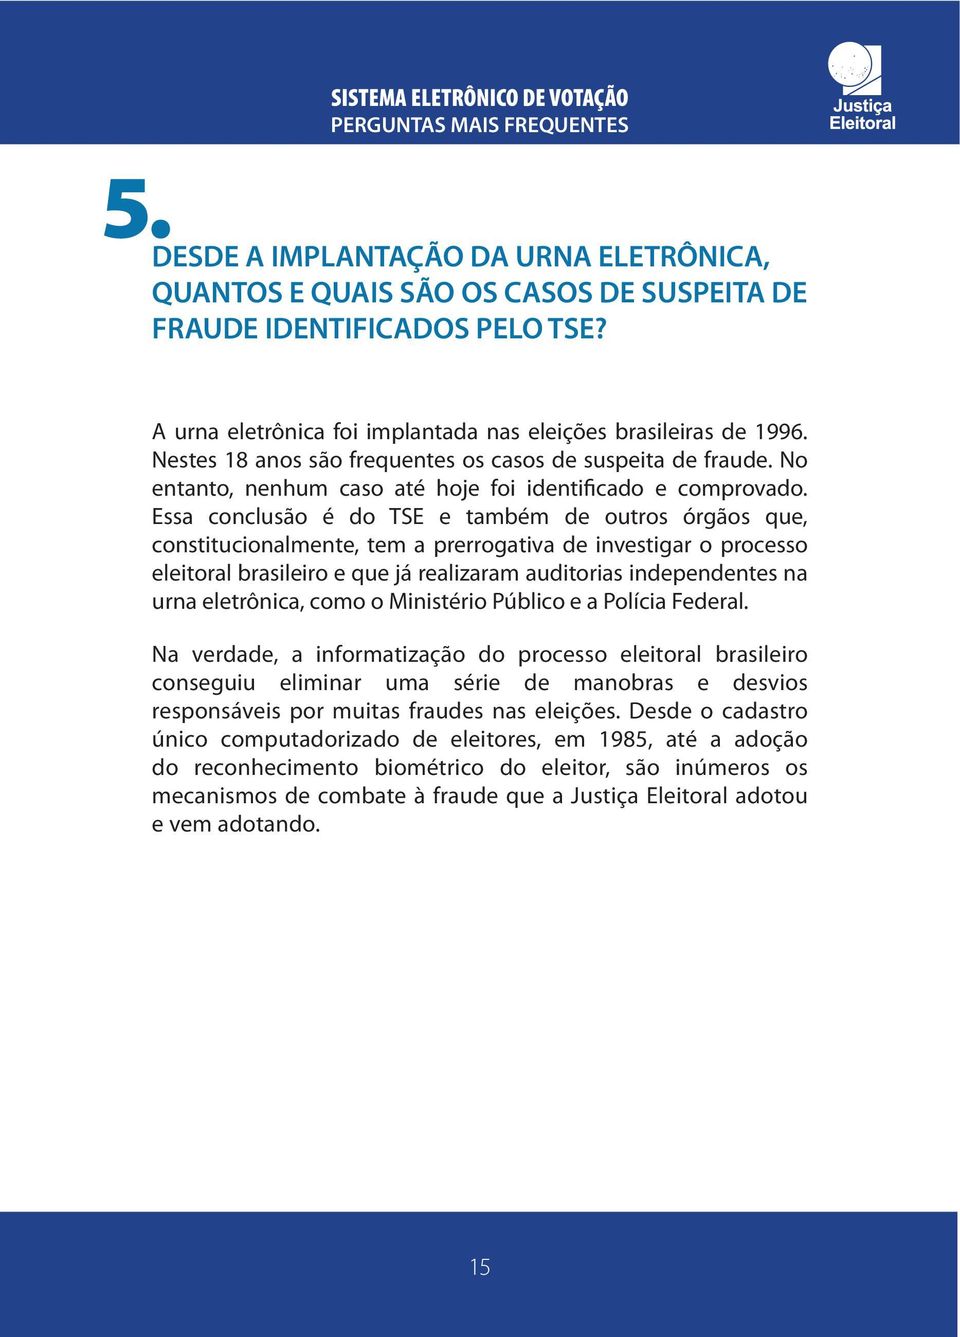 Essa conclusão é do TSE e também de outros órgãos que, constitucionalmente, tem a prerrogativa de investigar o processo eleitoral brasileiro e que já realizaram auditorias independentes na urna